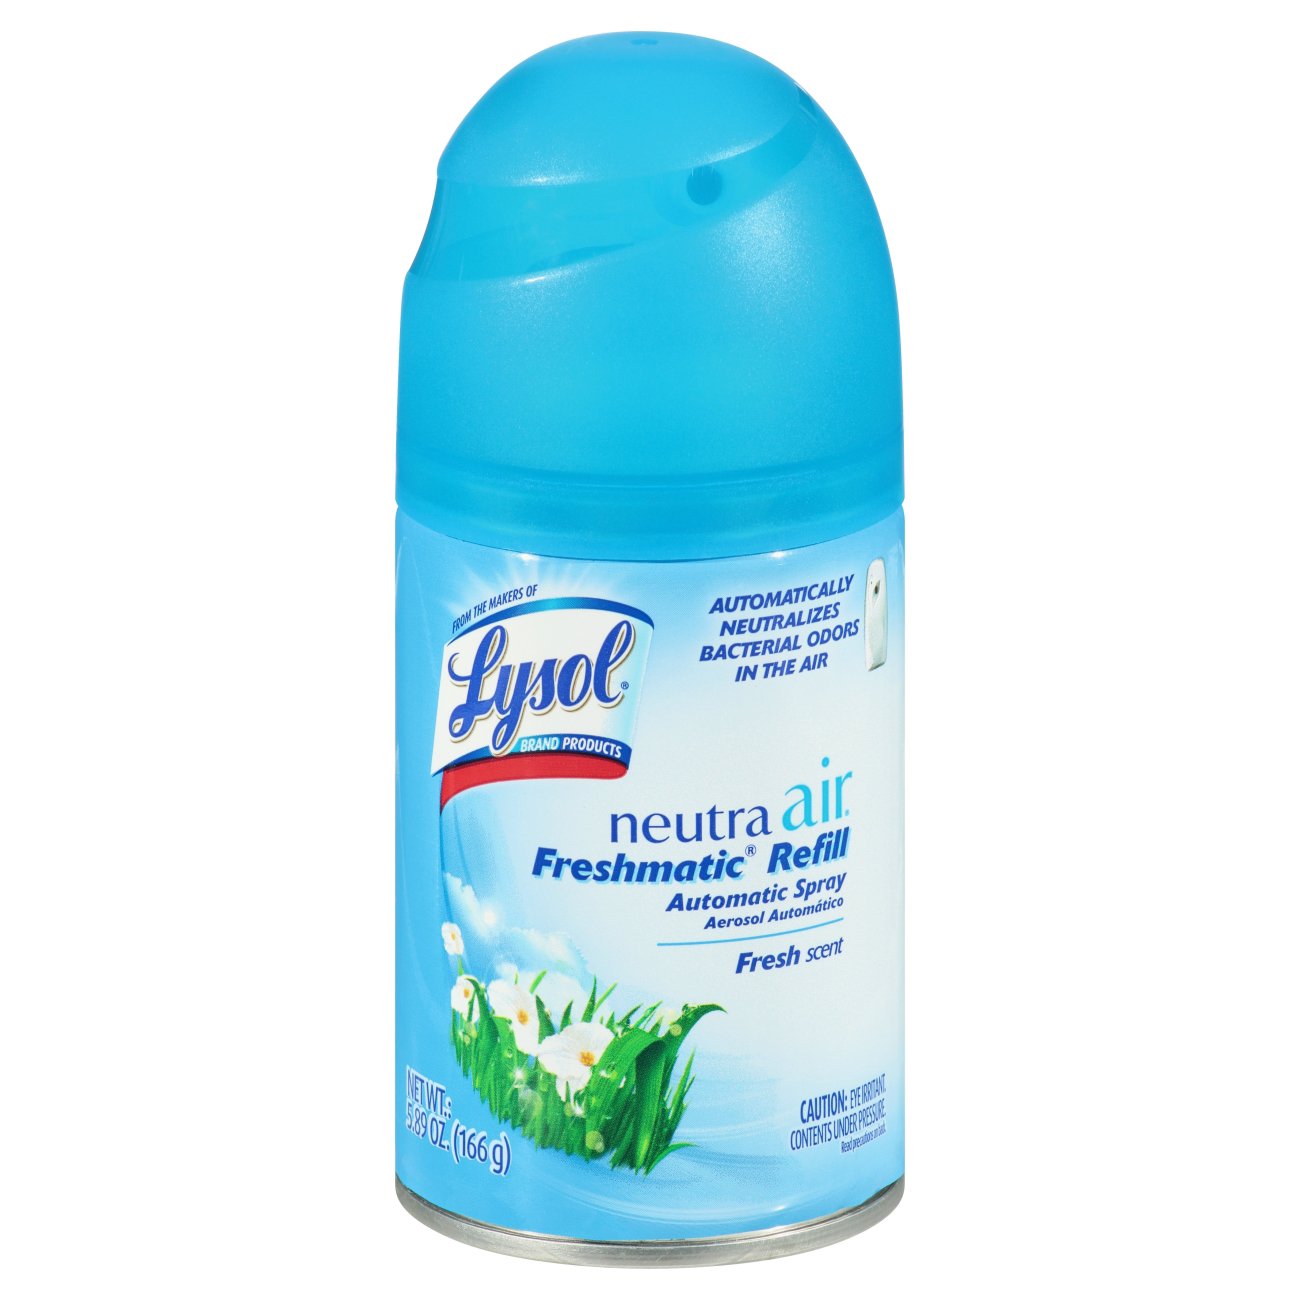 Neutra Air Fresh aerosol desinfectante